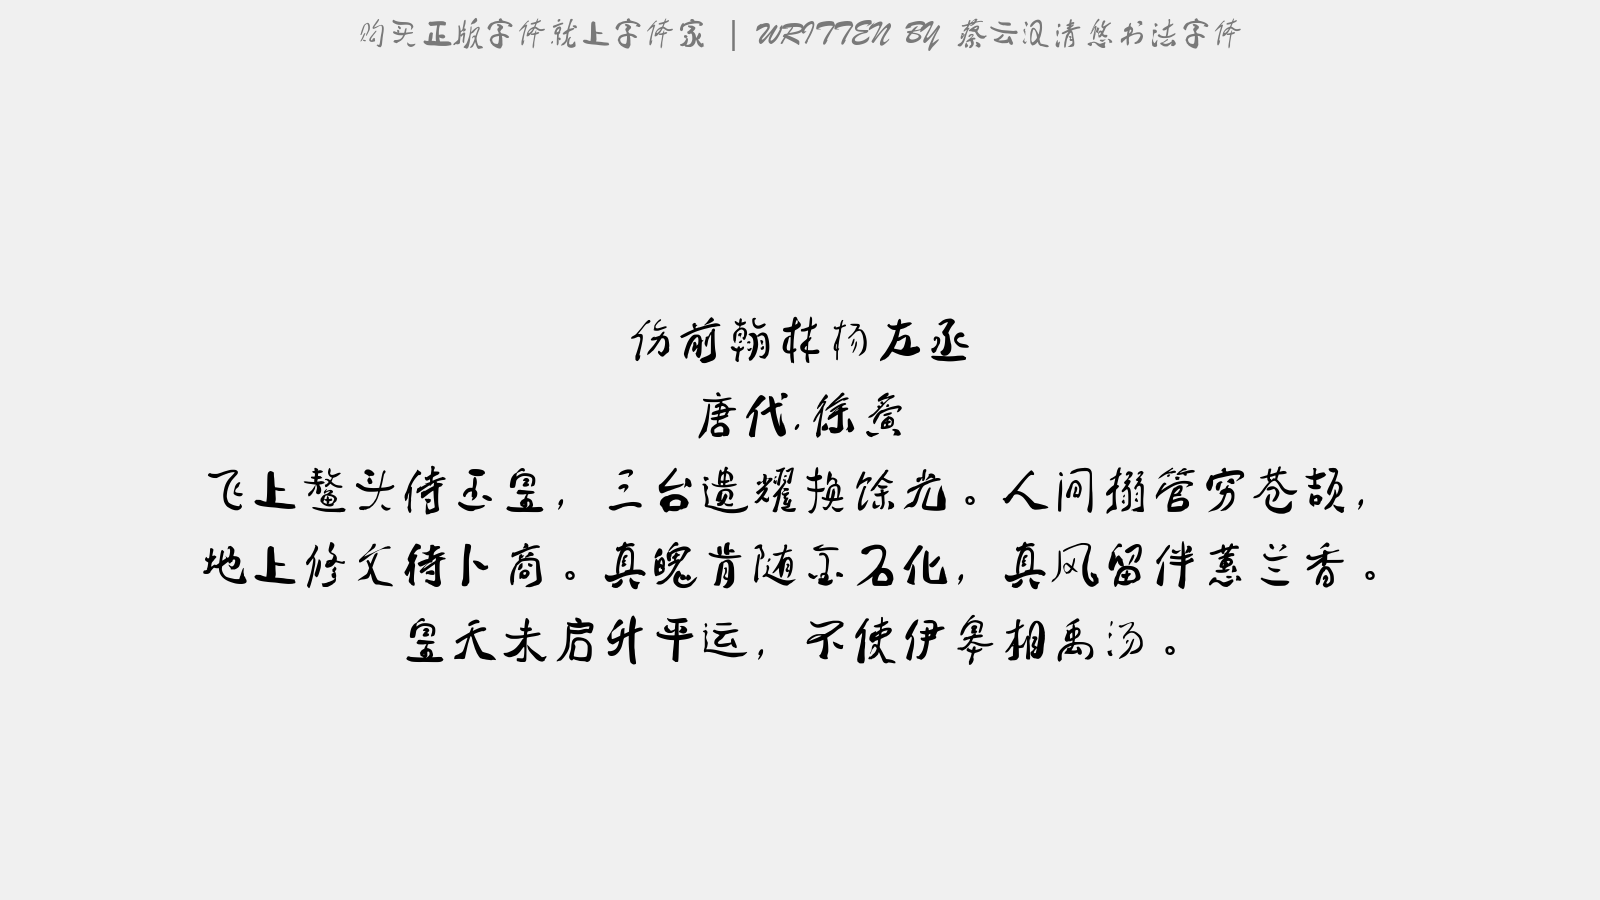 蔡云汉清悠书法字体 - 伤前翰林杨左丞